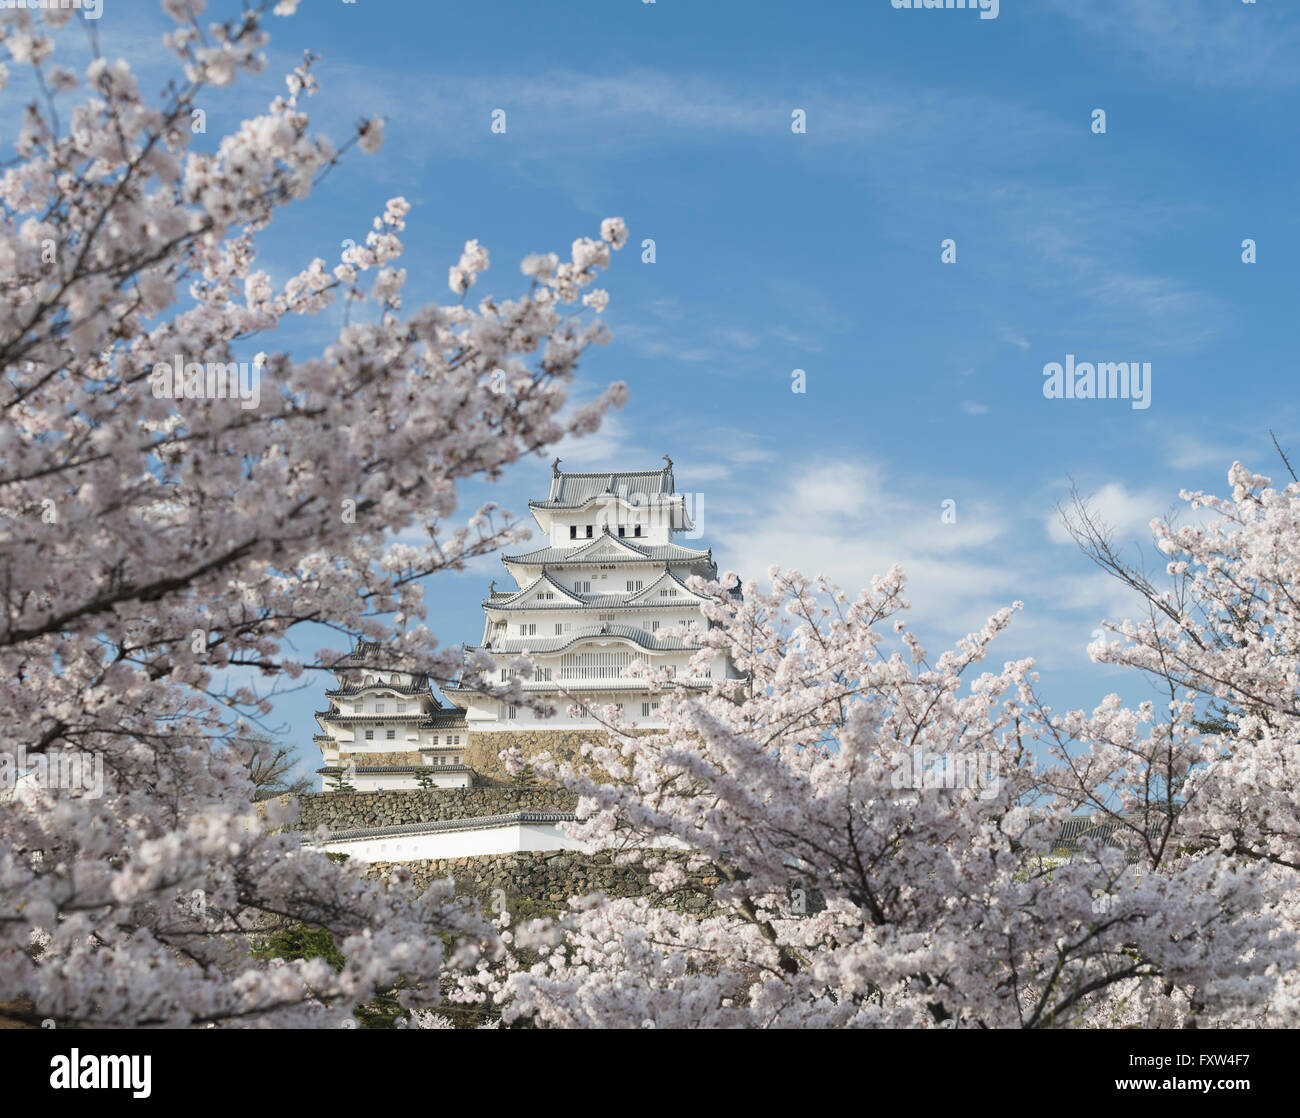 Château de Himeji et cherry blossom après les travaux terminés en 2015 . Himeji, préfecture de Hyogo au Japon. Banque D'Images